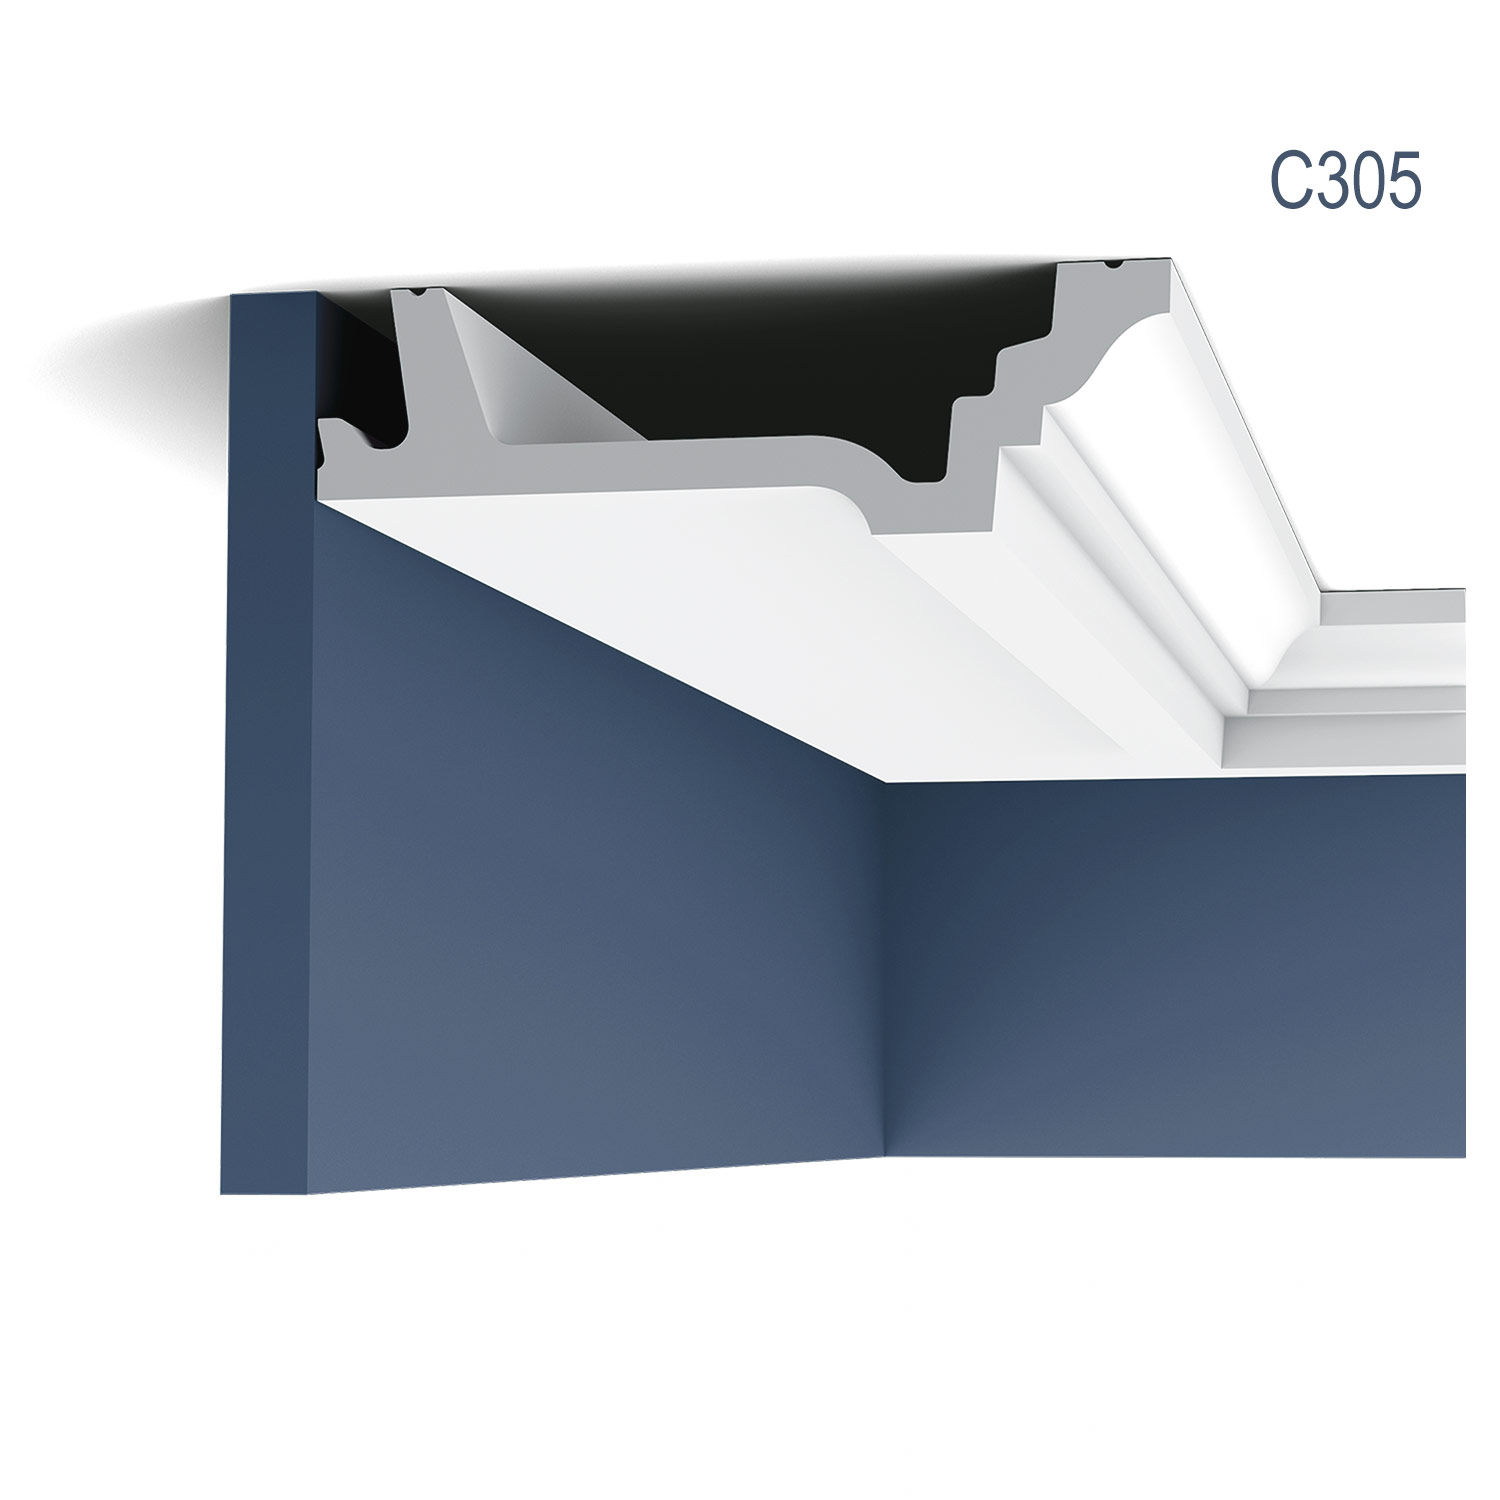 Cornisa C305, profil decorativ, pentru tavan, alba, vopsibila, rigida, calitate excelenta, Belgia, din Poliuretan rigid, L 200 x H 4,7 x L 15,5 cm